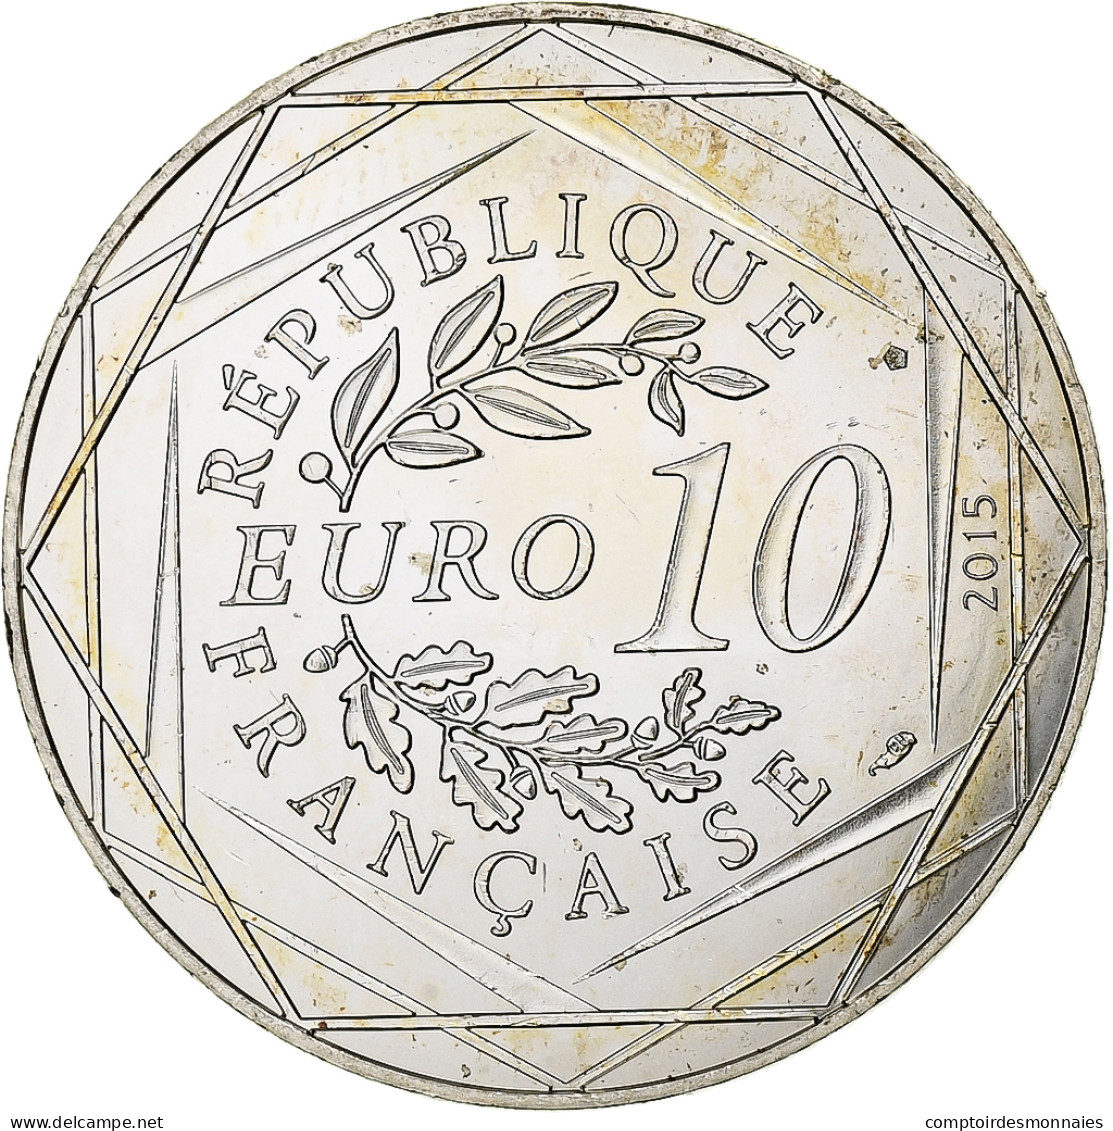 France, 10 Euro, Astérix - Liberté, 2015, MDP, Argent, SUP+ - Frankrijk